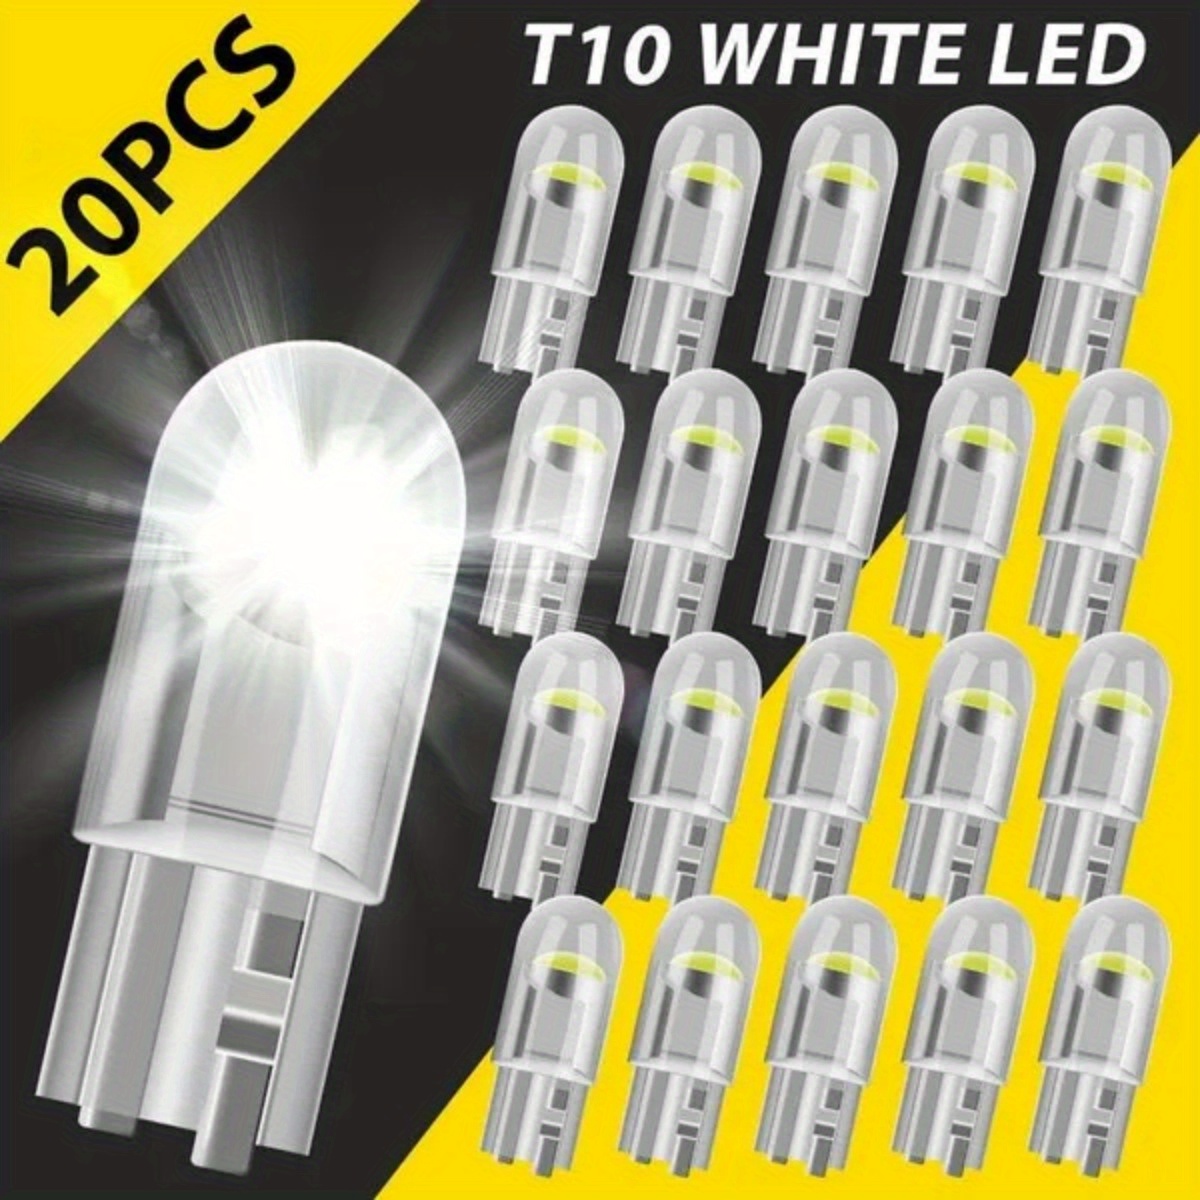  TABEN 194 luces LED T10 168 2825 W5W bombilla LED 12SMD 5630  Chipset de repuesto LED para automóvil, cúpula interior, mapa, puerta,  cortesía, luces de matrícula, blanco, 12 V (2 unidades) : Automotriz